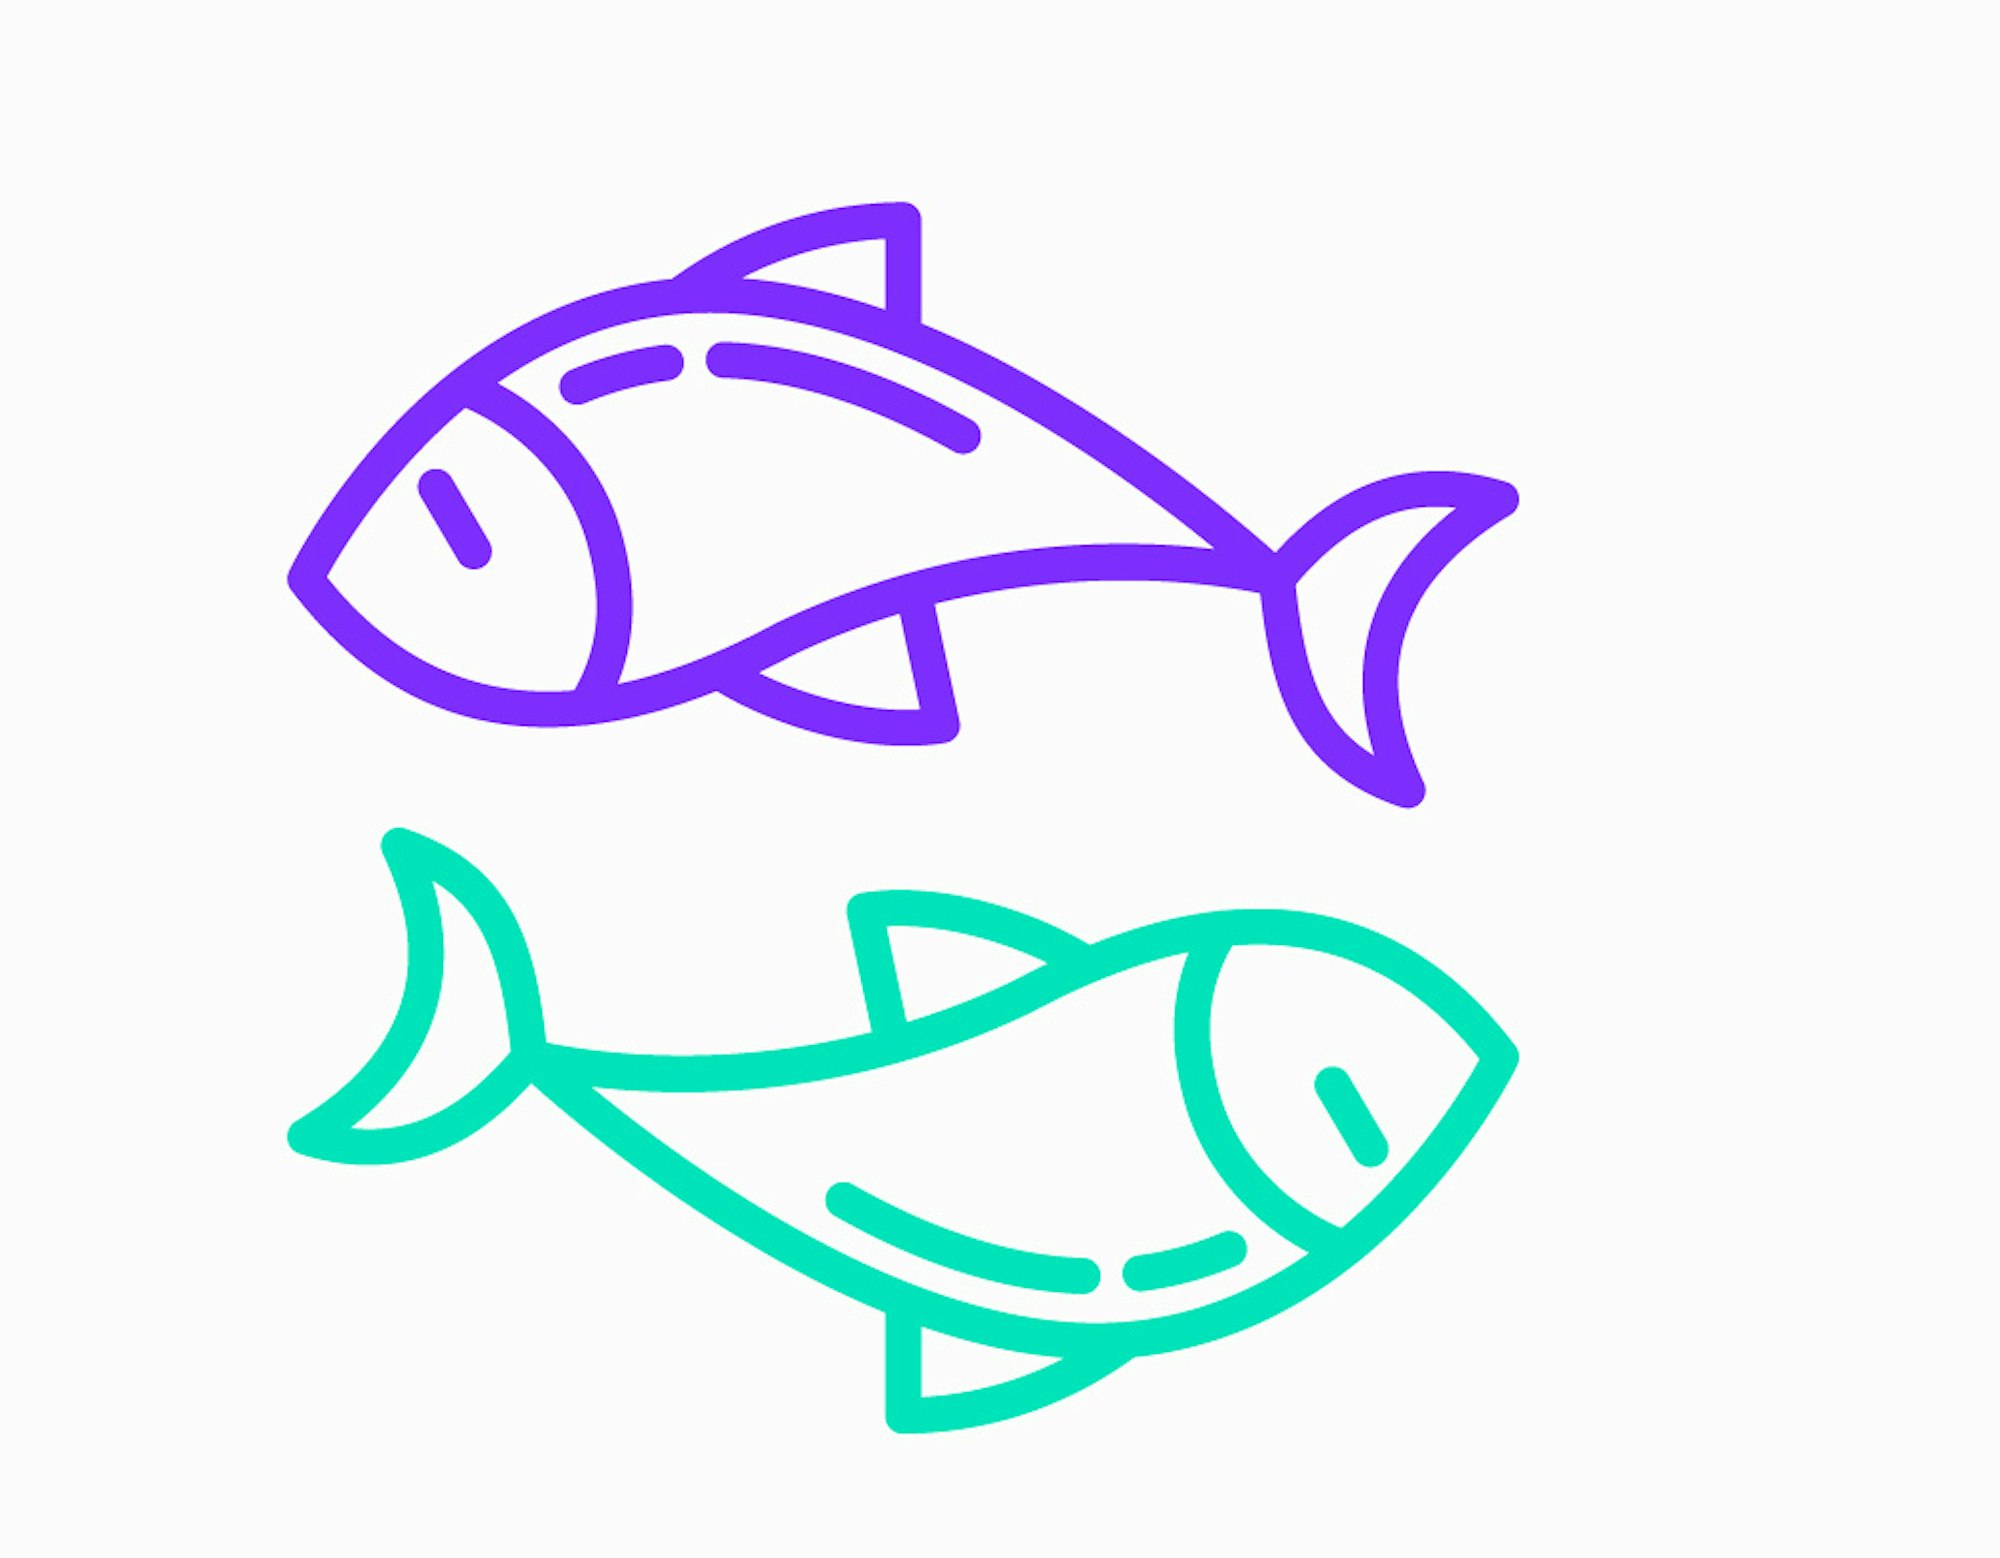 Fische